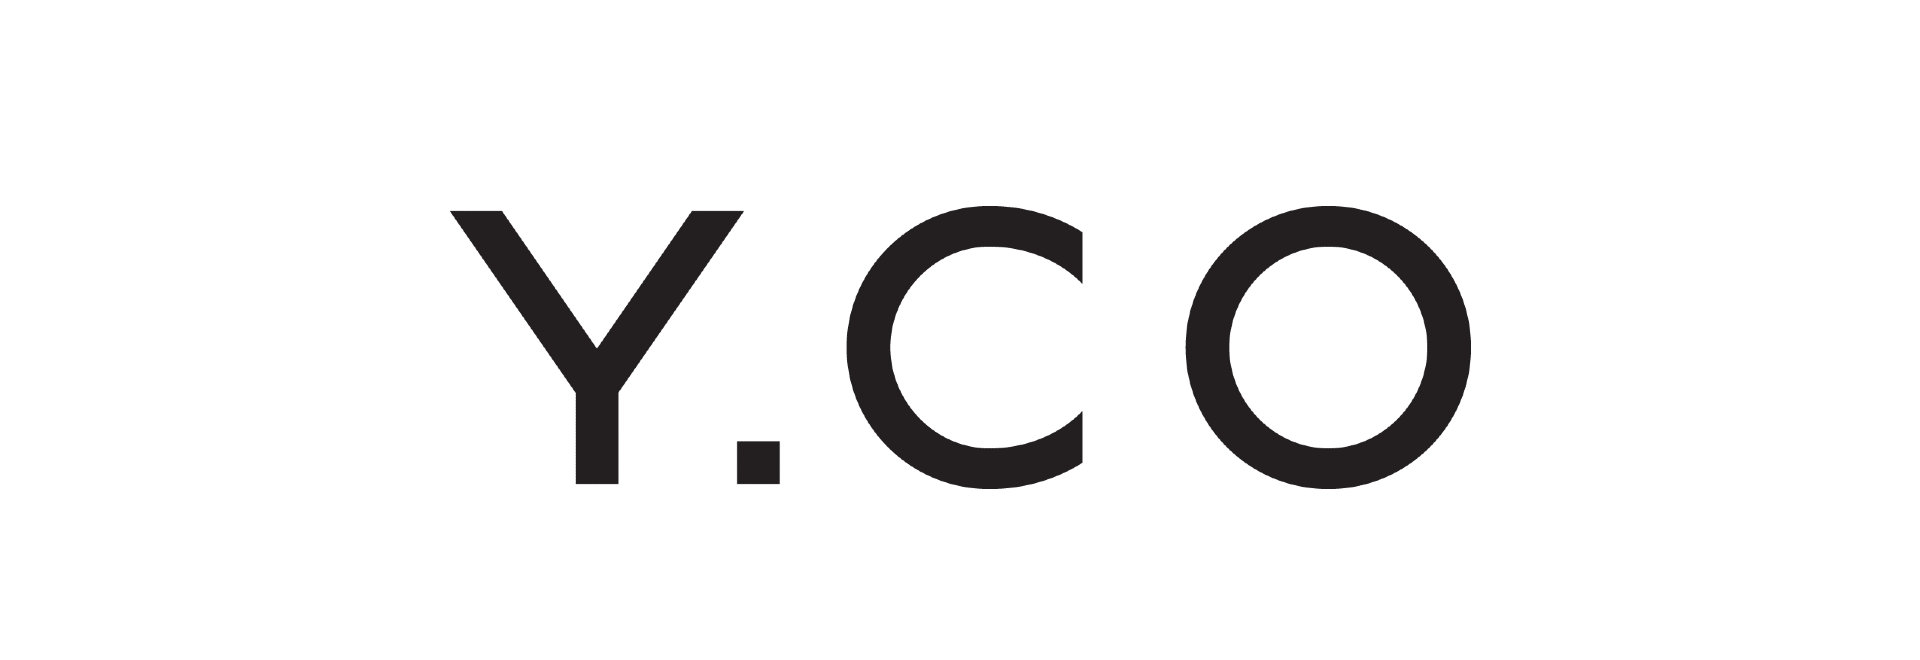 Y.CO Logo